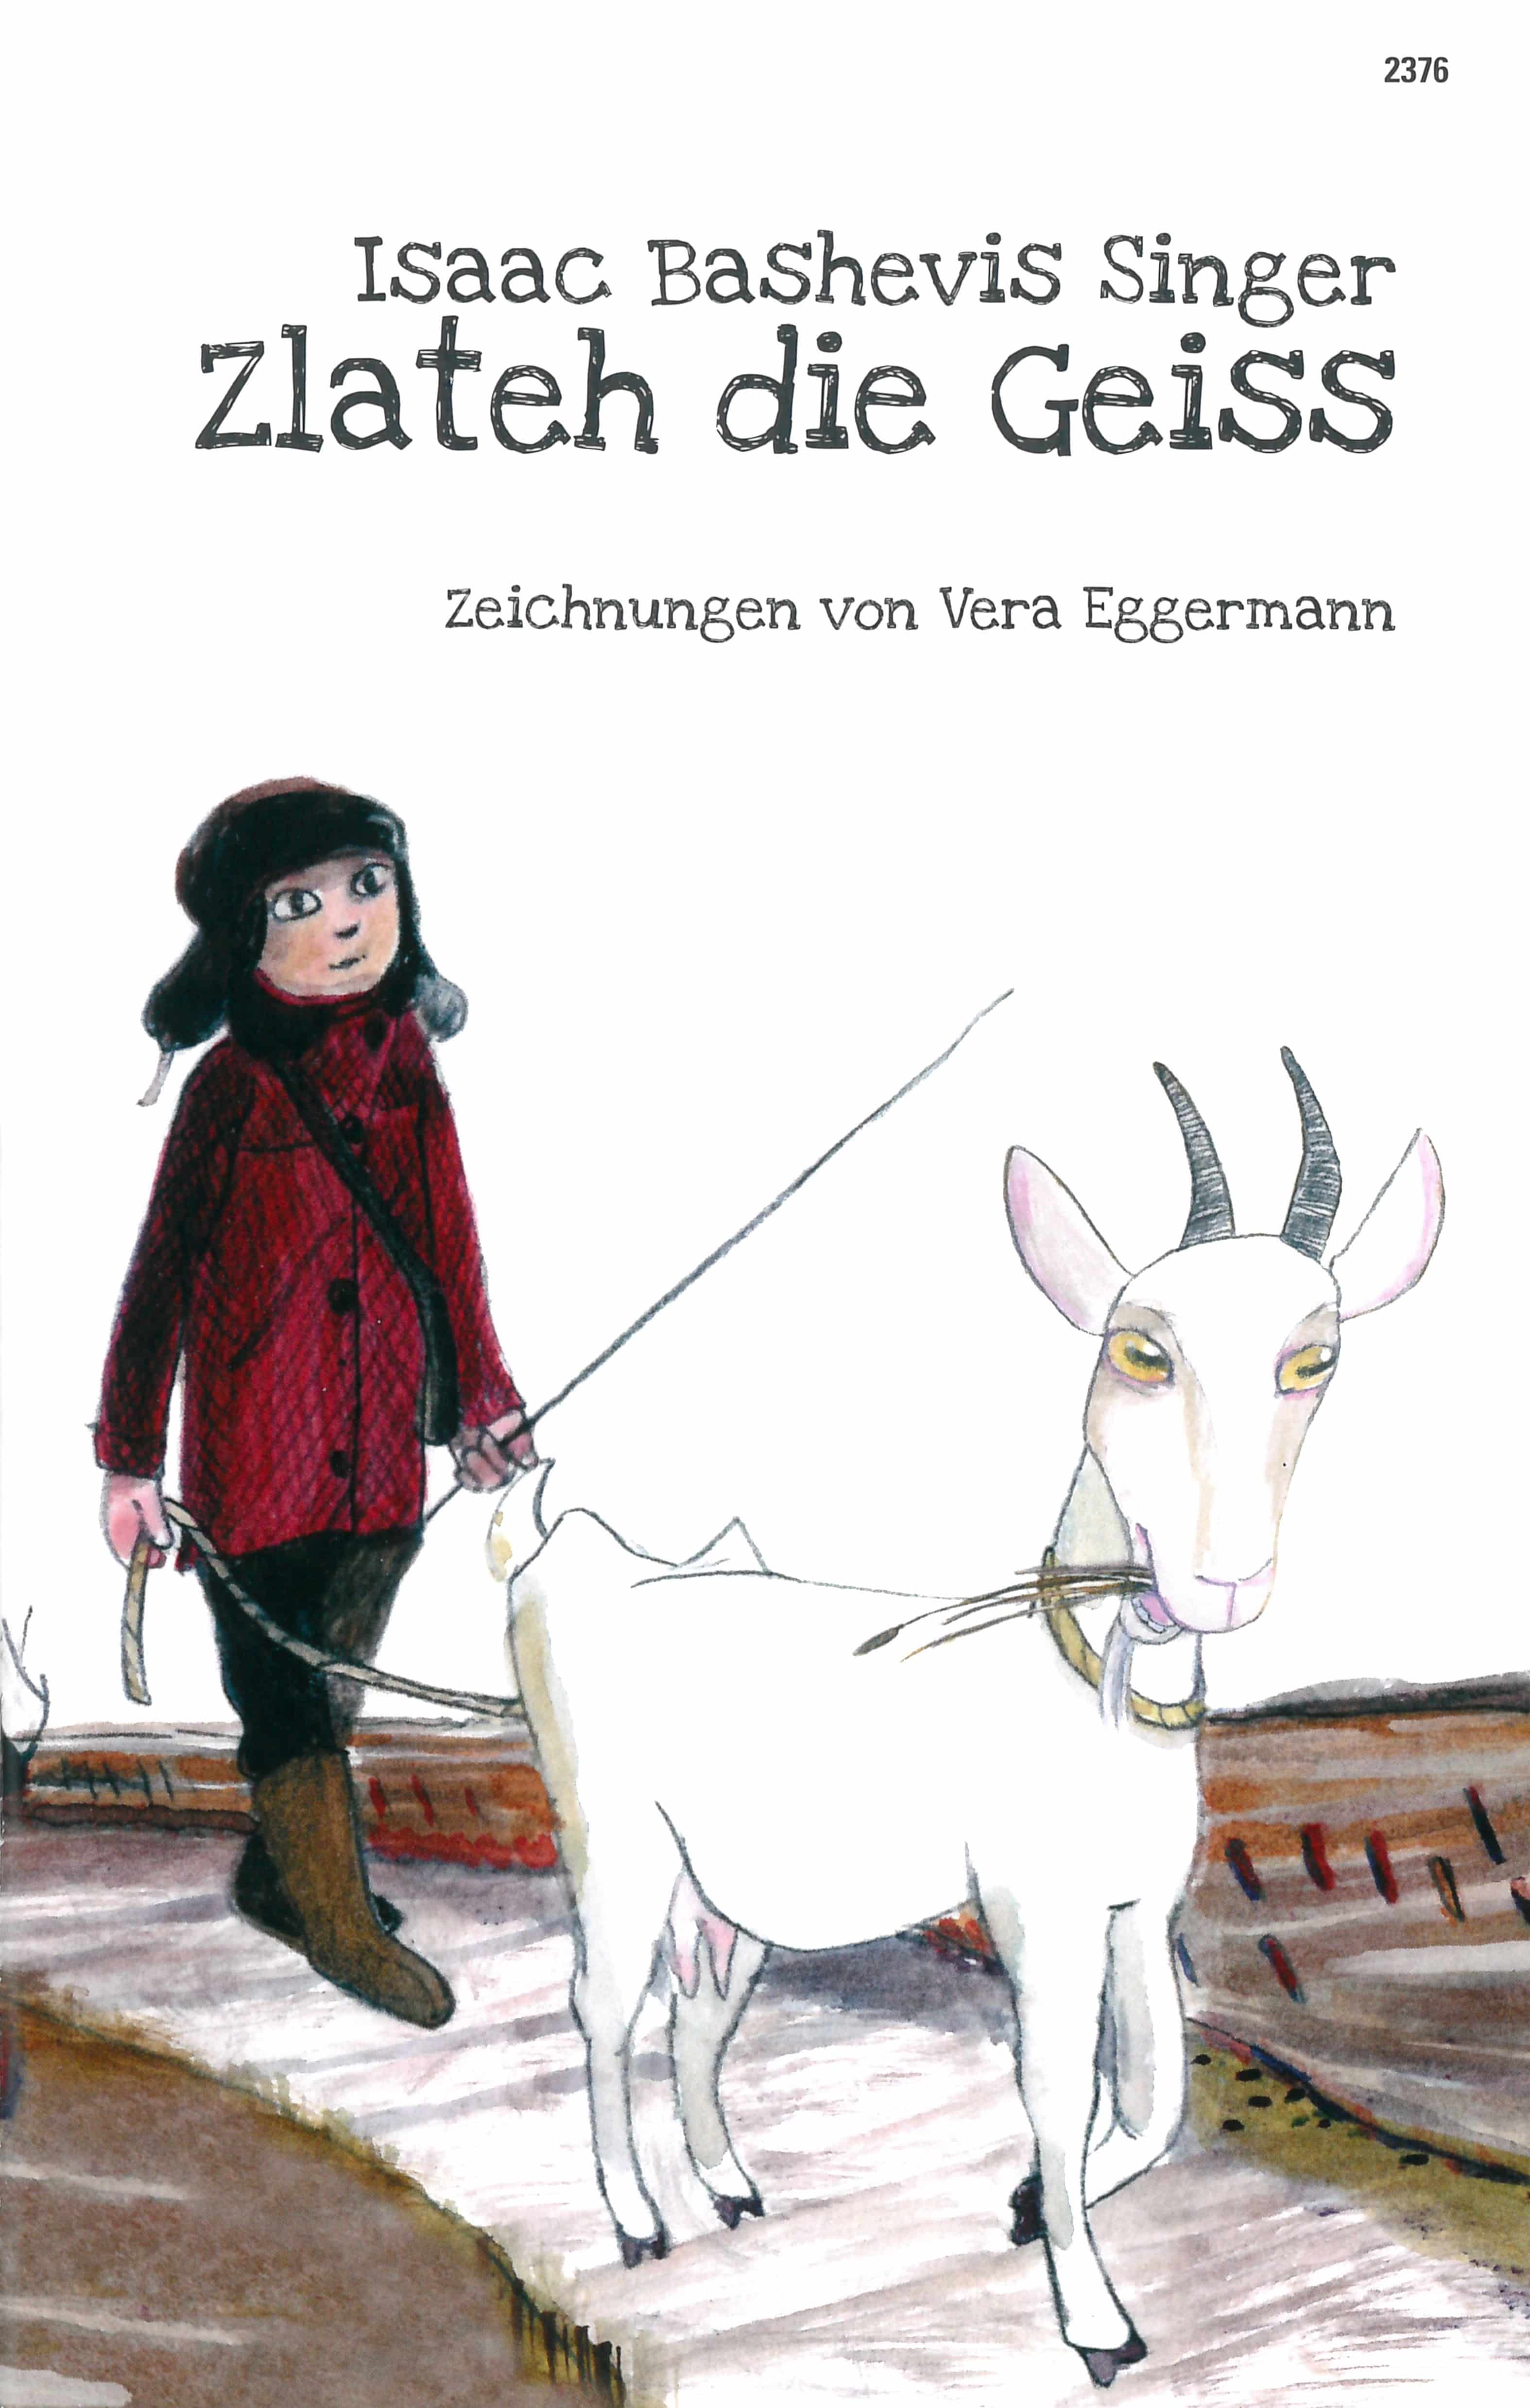 Zlateh die Geiss, ein Kinderbuch von Isaac Bashevis Singer, Illustration von Vera Eggermann, SJW Verlag, Bilderbuchklassiker